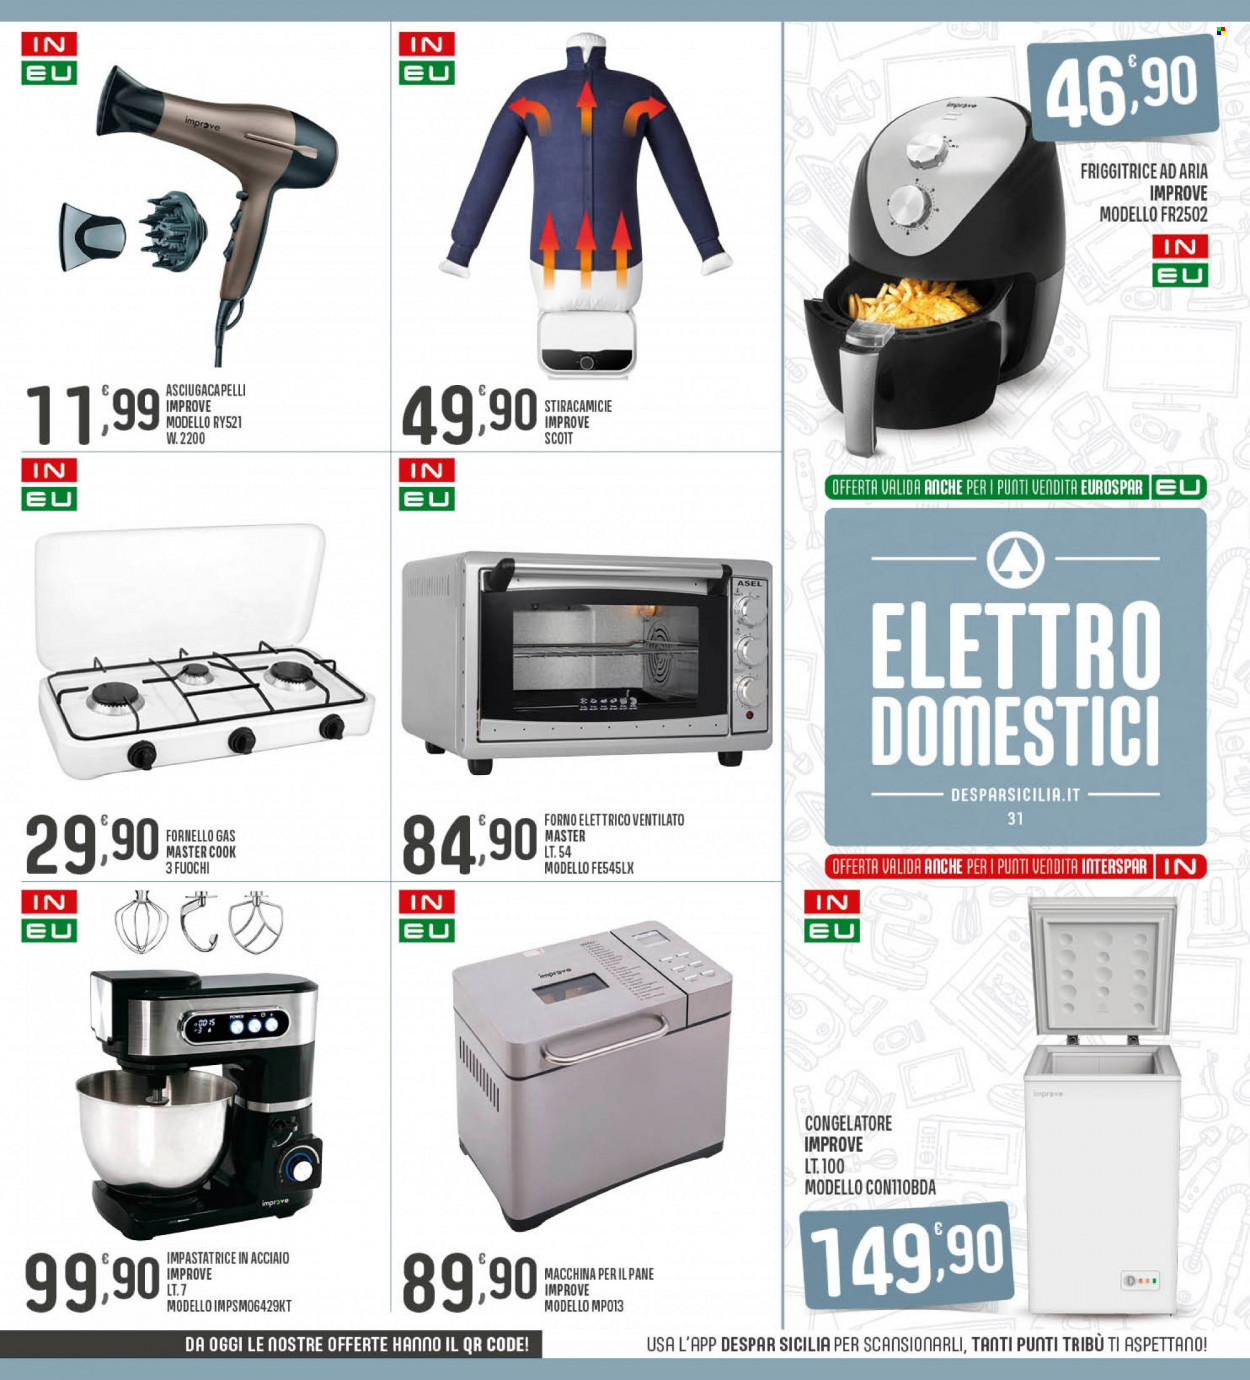 thumbnail - Volantino Eurospar - 5/12/2022 - 14/12/2022 - Prodotti in offerta - pane, friggitrice, congelatore, forno, forno elettrico, fornello, impastatrice, friggitrice ad aria, macchina per il pane, asciugacapelli. Pagina 31.